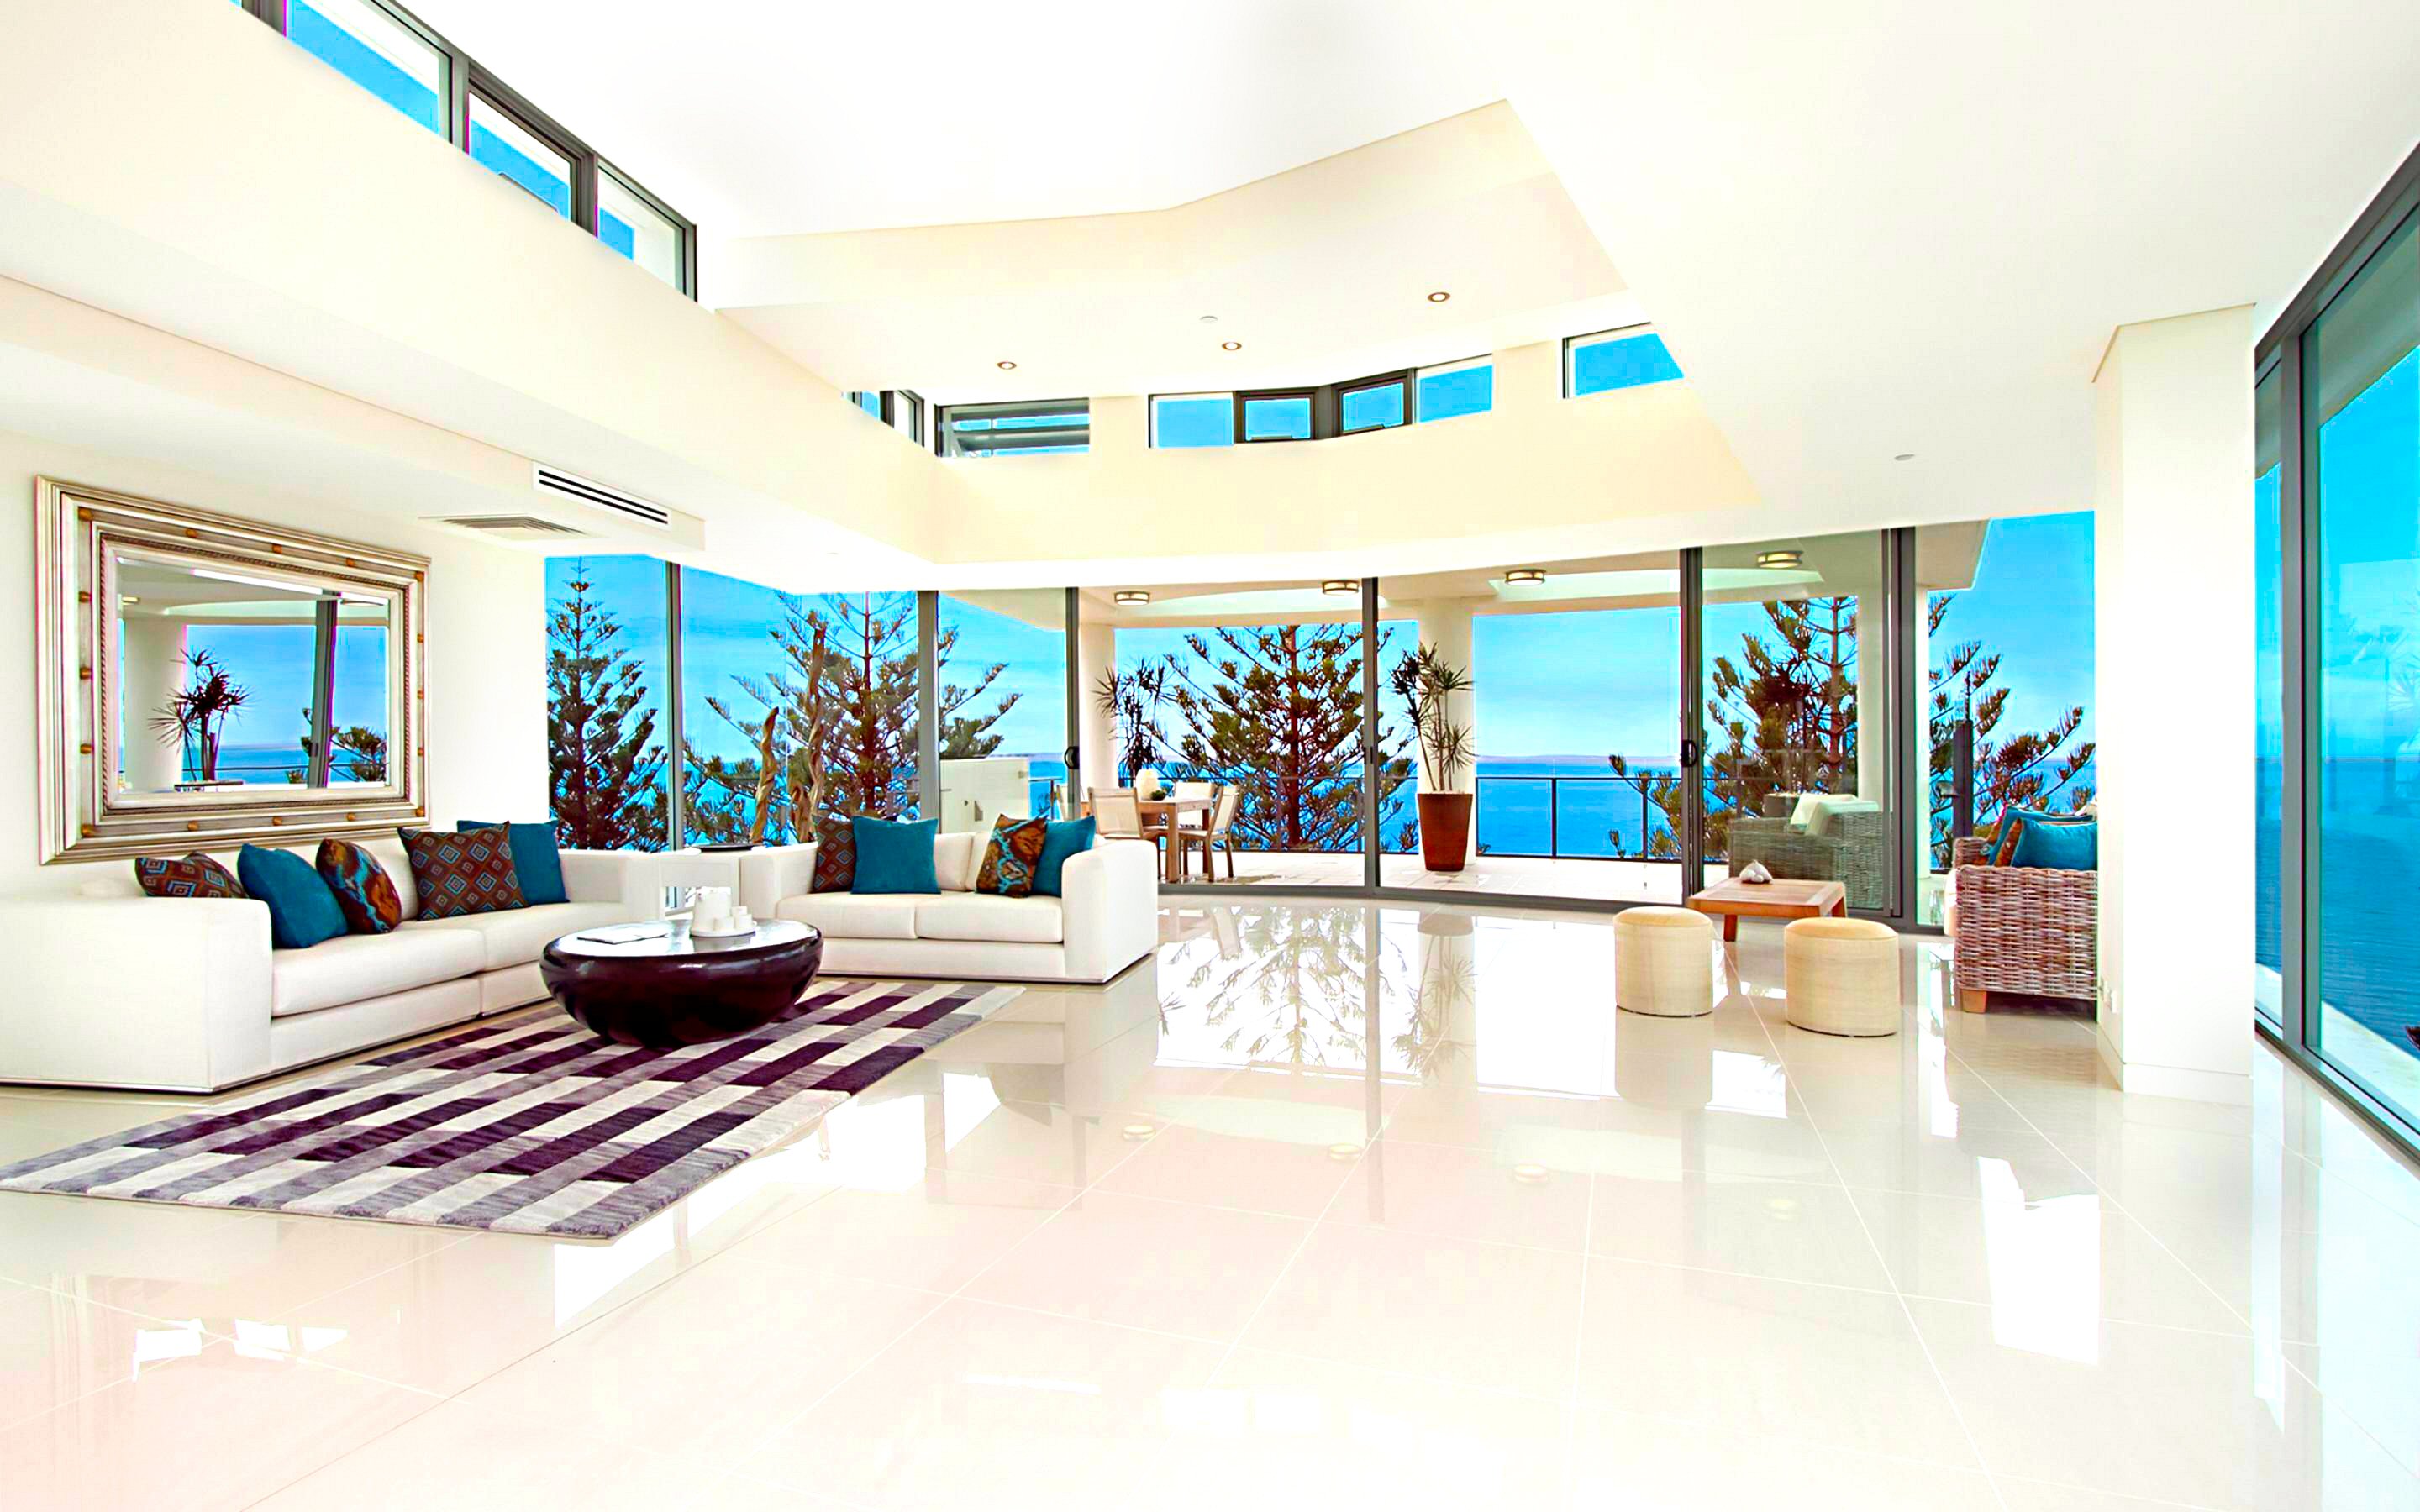 Interior Villa Room Terrace Reflection Architecture 2880x1800